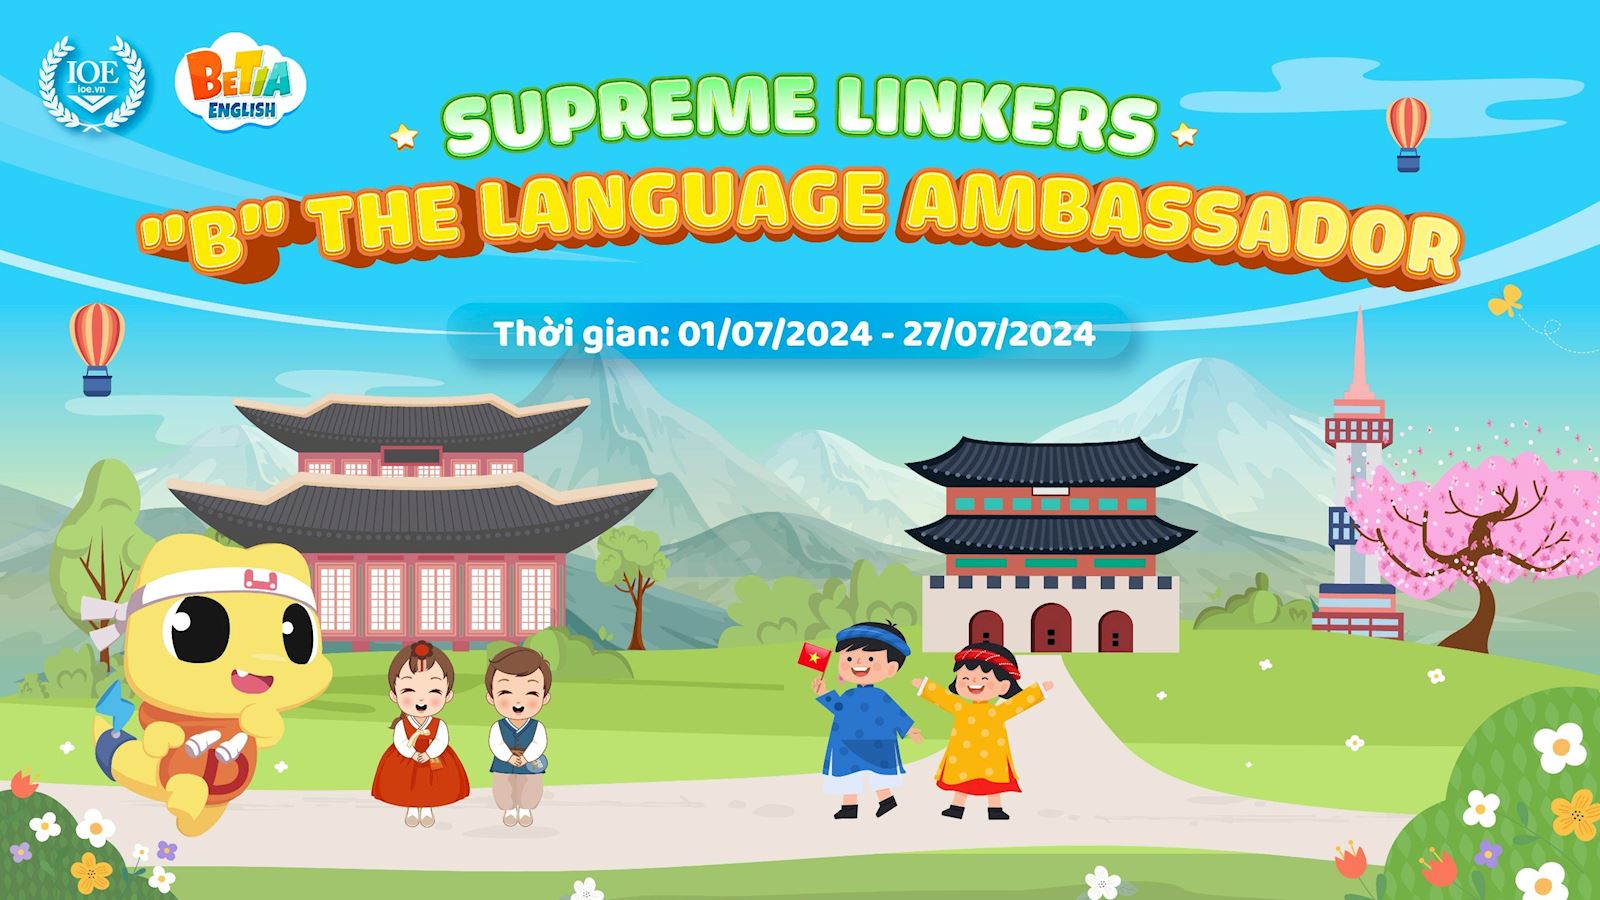 Supreme Linkers - "B" the Language Ambassador: Bùng nổ với sự kiện hè tháng 7 cùng IOE!